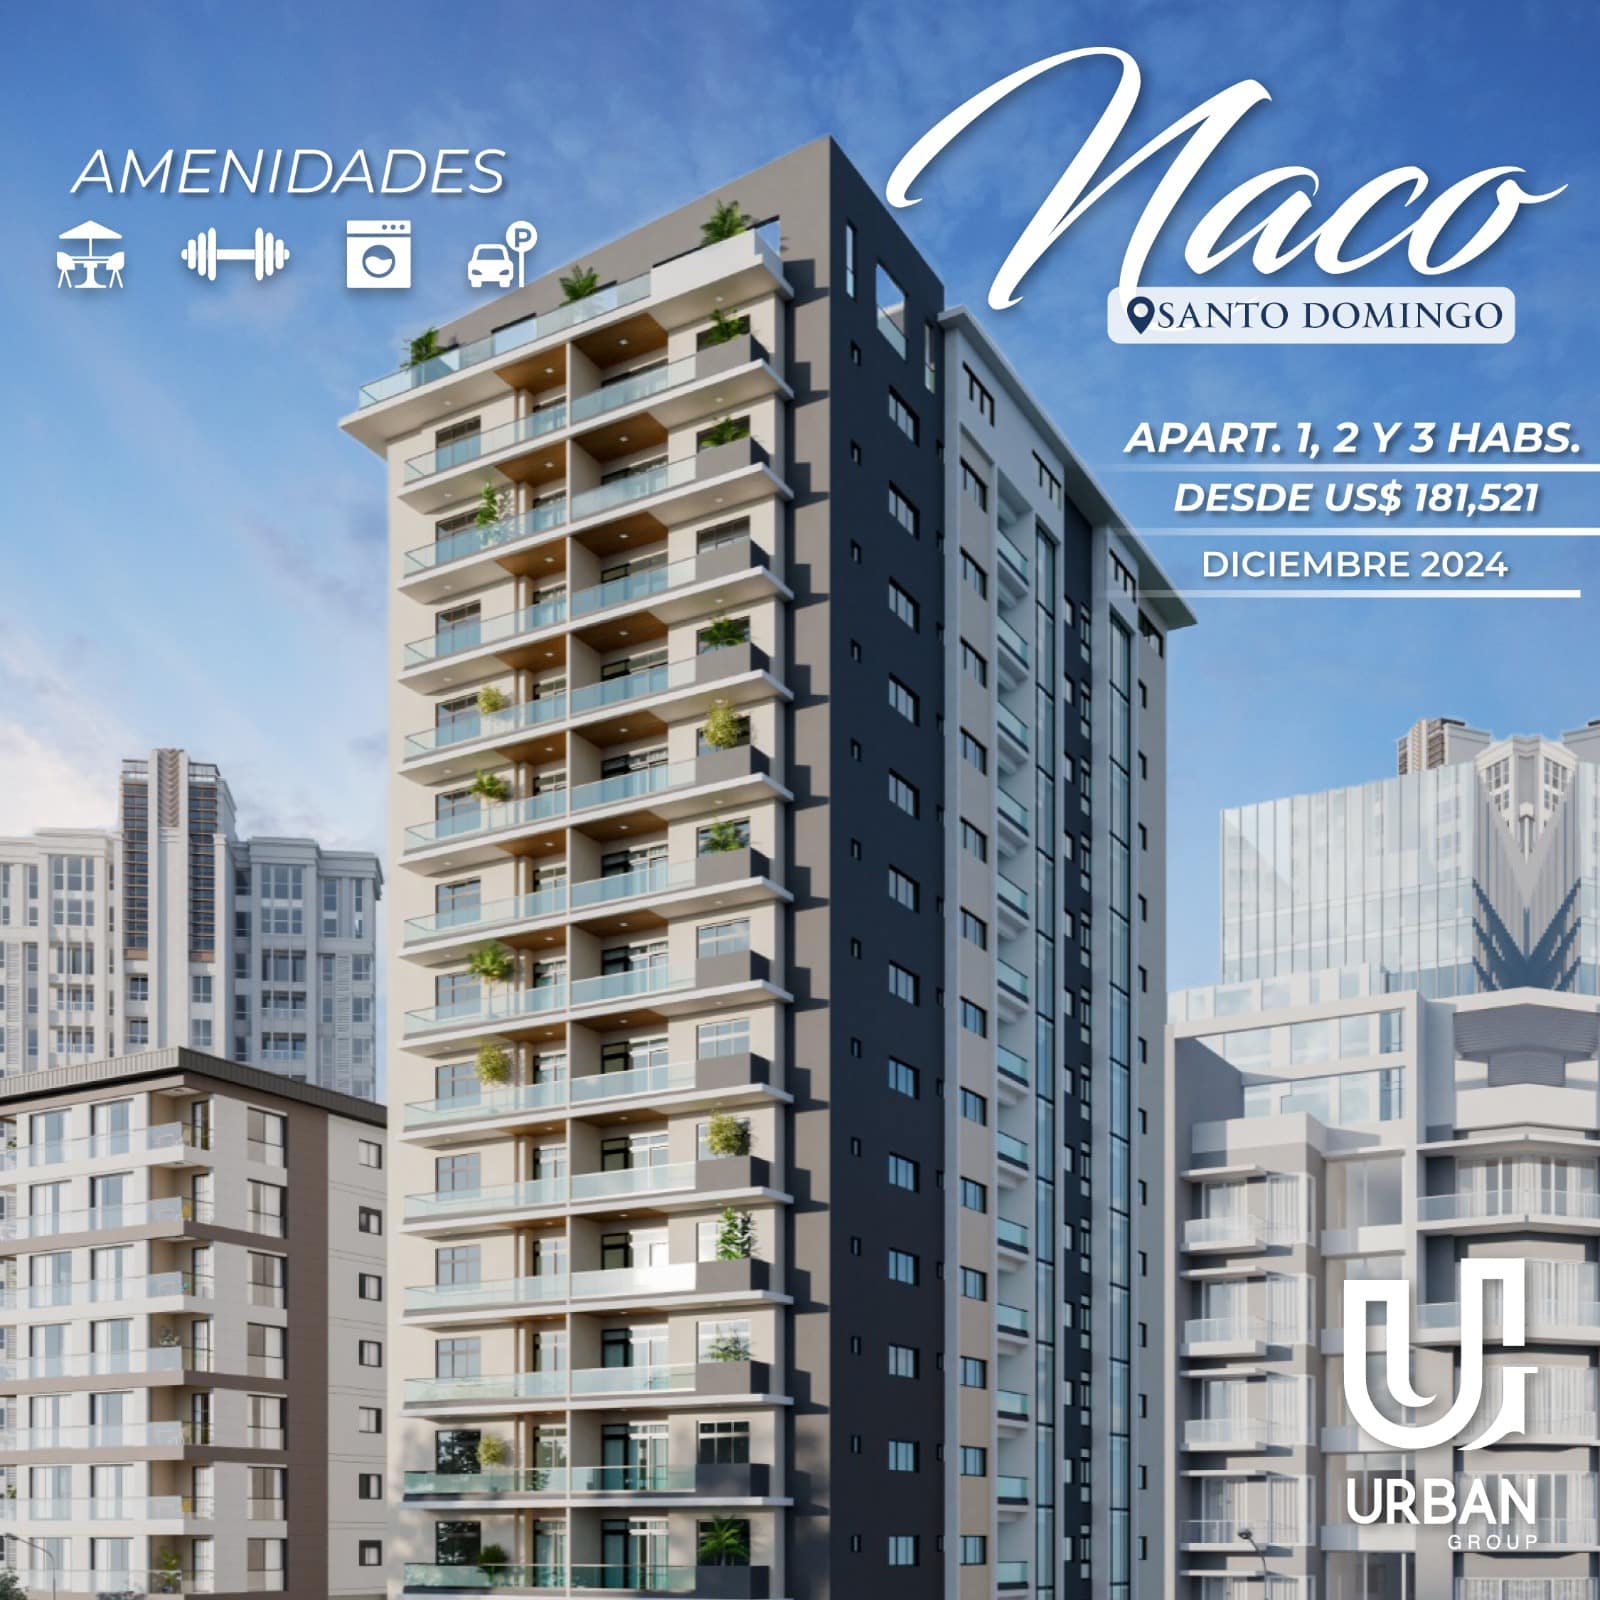 Apartamentos de 1,2 & 3 Habitaciones en Naco desde US$181,521